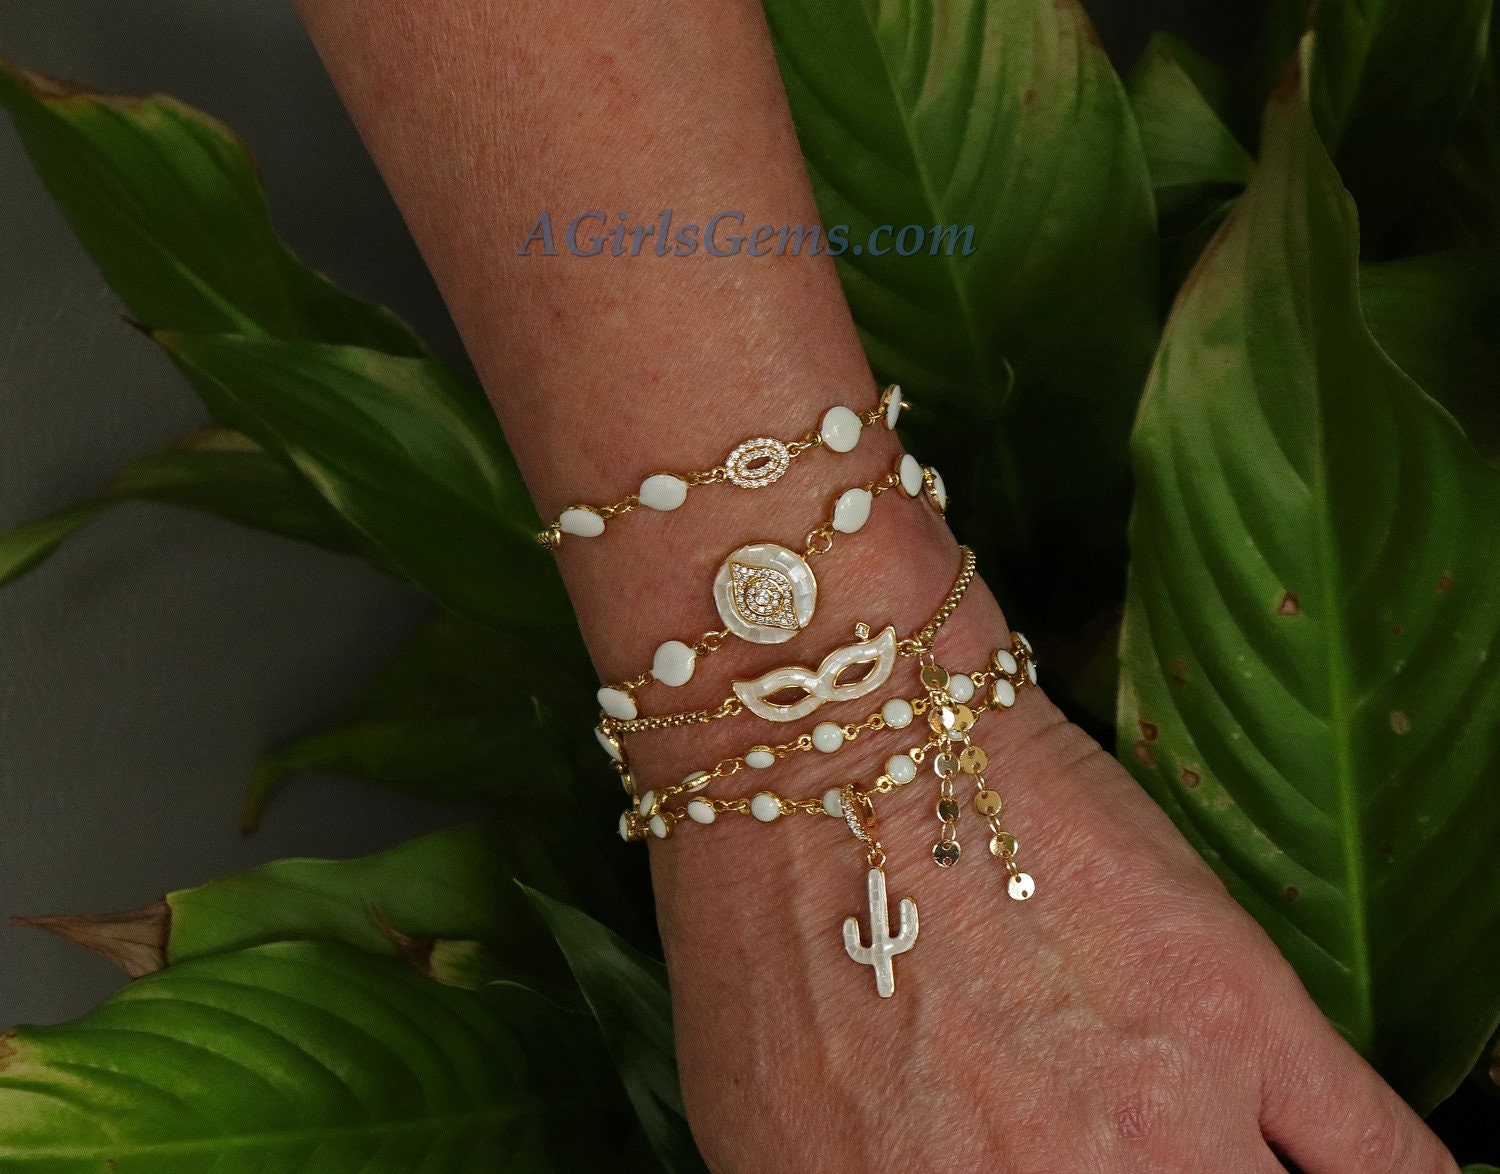 Gold Butterfly Bracelet, CZ Shell White/Purple Butterflies, Butterfly Jewelry for Minimalist, Adjustable Bracelets - Regina Harp Designs - A Girls Gems